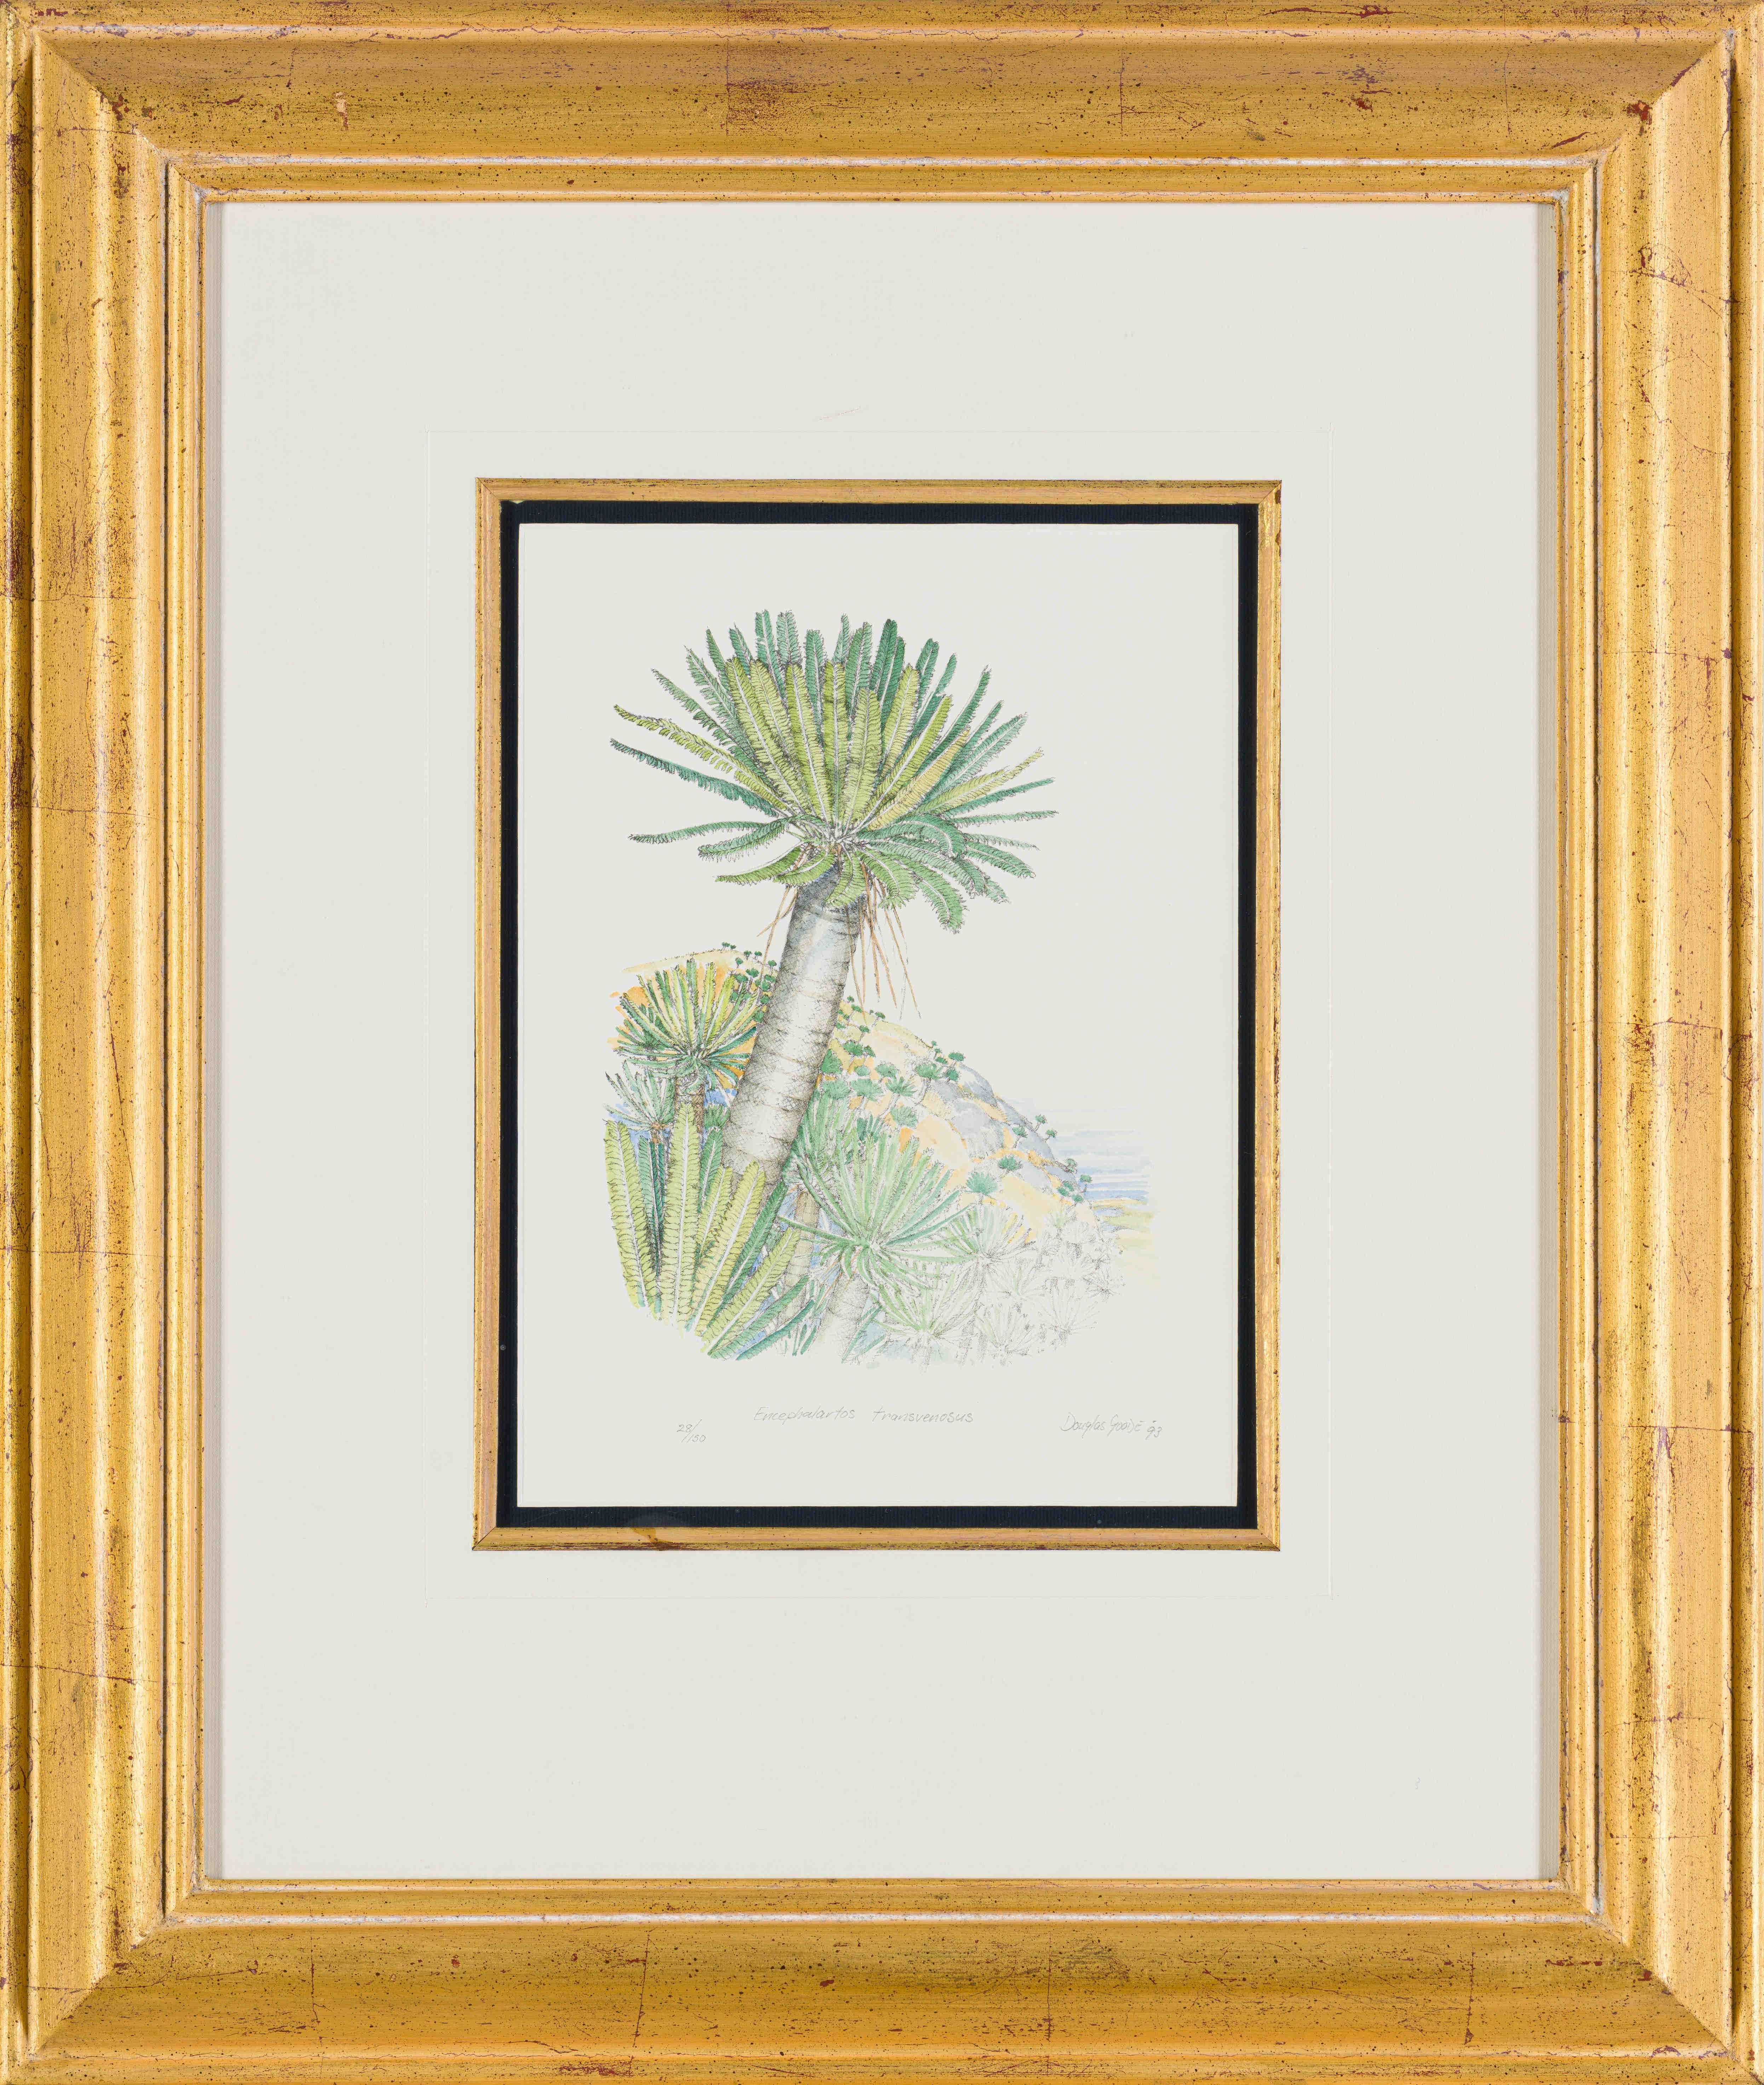 Artwork by Douglas Goode, Encephalartos transvenosus, Made of lithograph